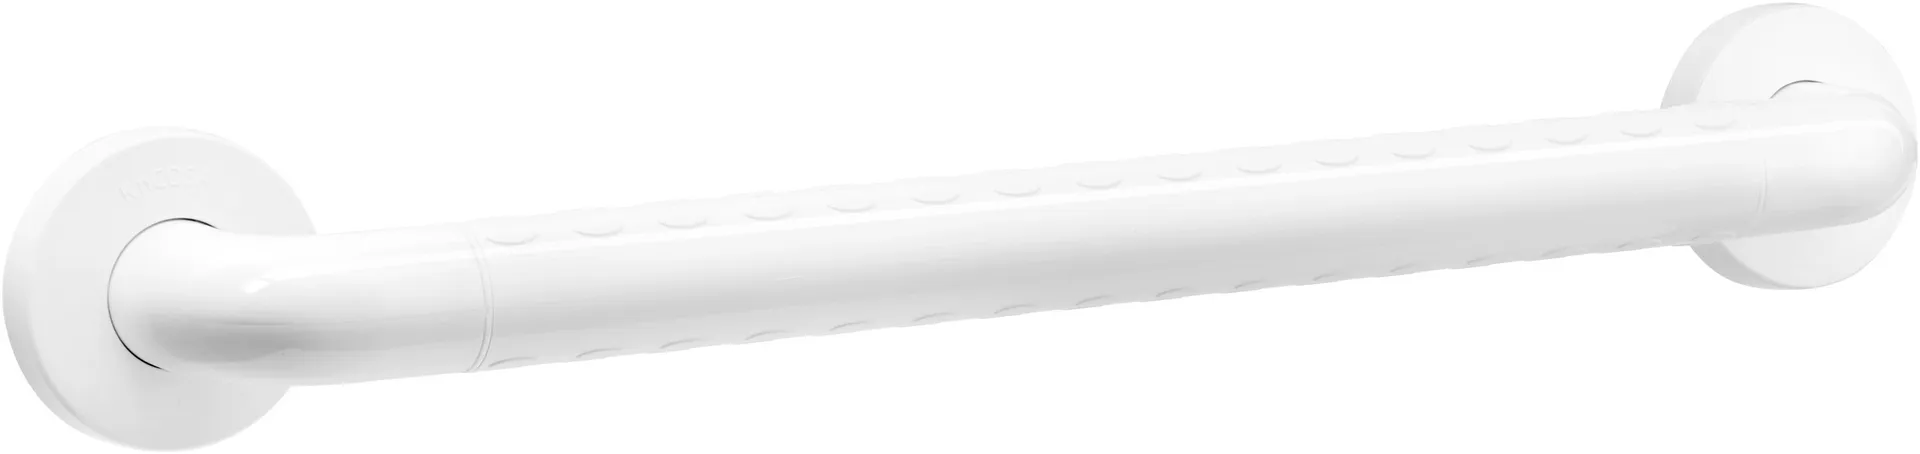 Tammiholma tukikahva 75 cm valkoinen antibakteerisella pinnoitteella